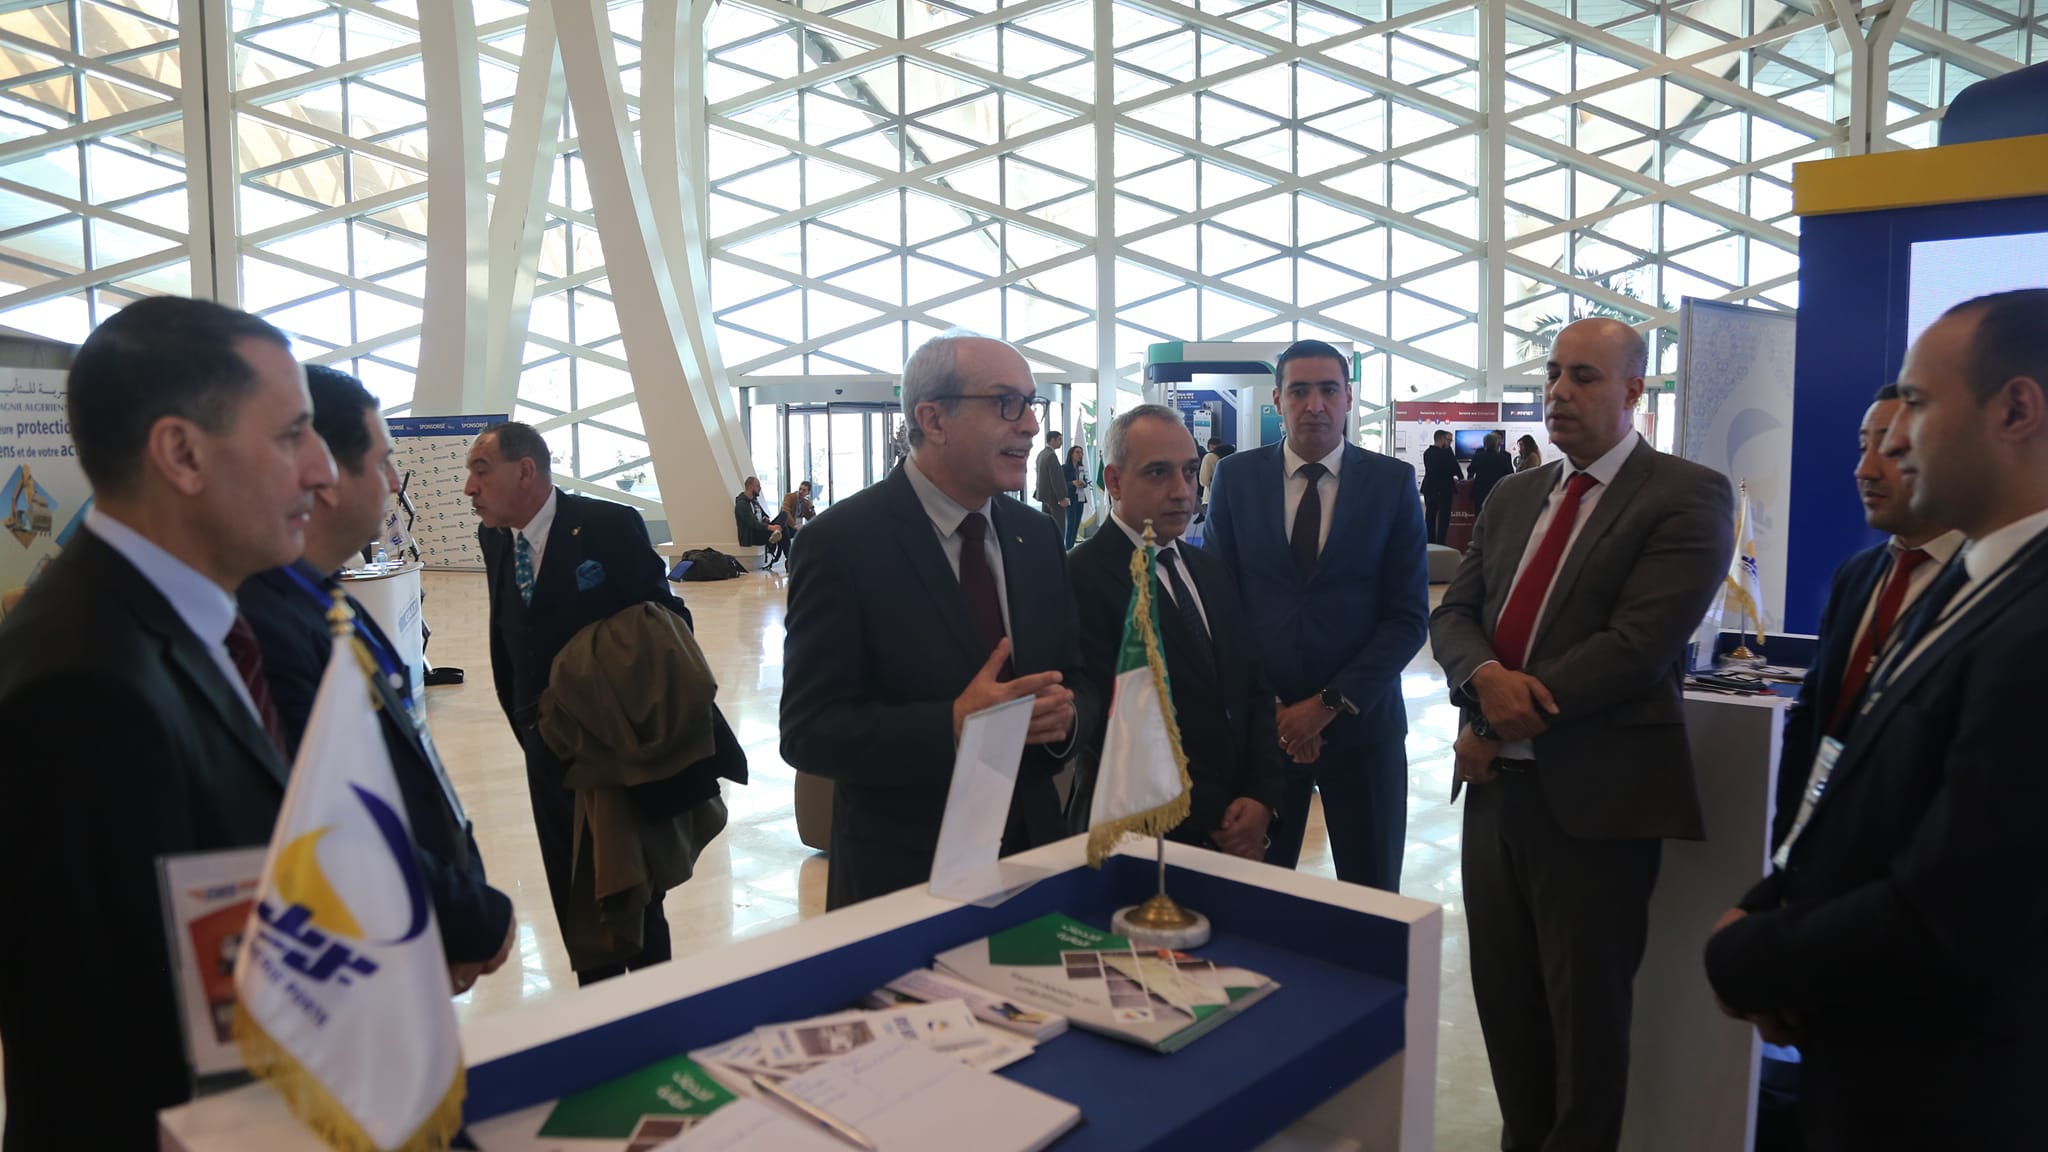 Algeria fintech e-commerce summit ملتقى الجزائر للتكنولوجيا المالية و التجارة الإلكترونية AFES (18)